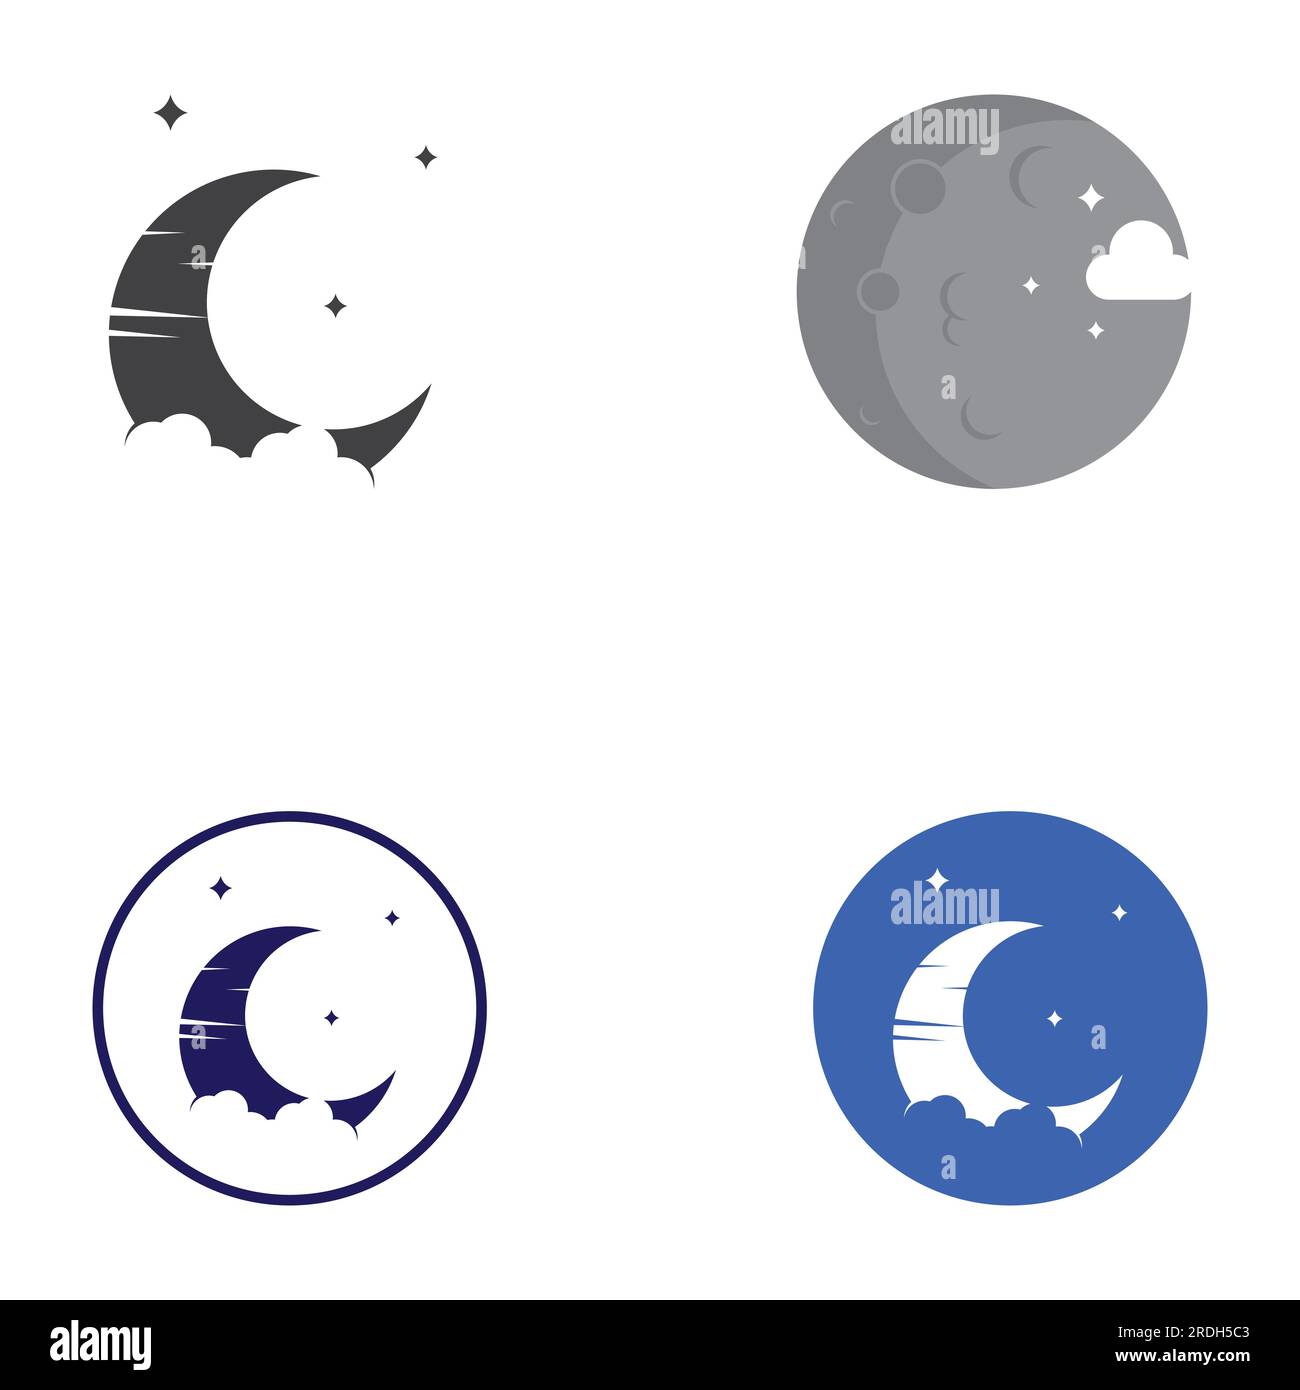 full moon and half moon logo, using logo vector icon concept design Stock Vector